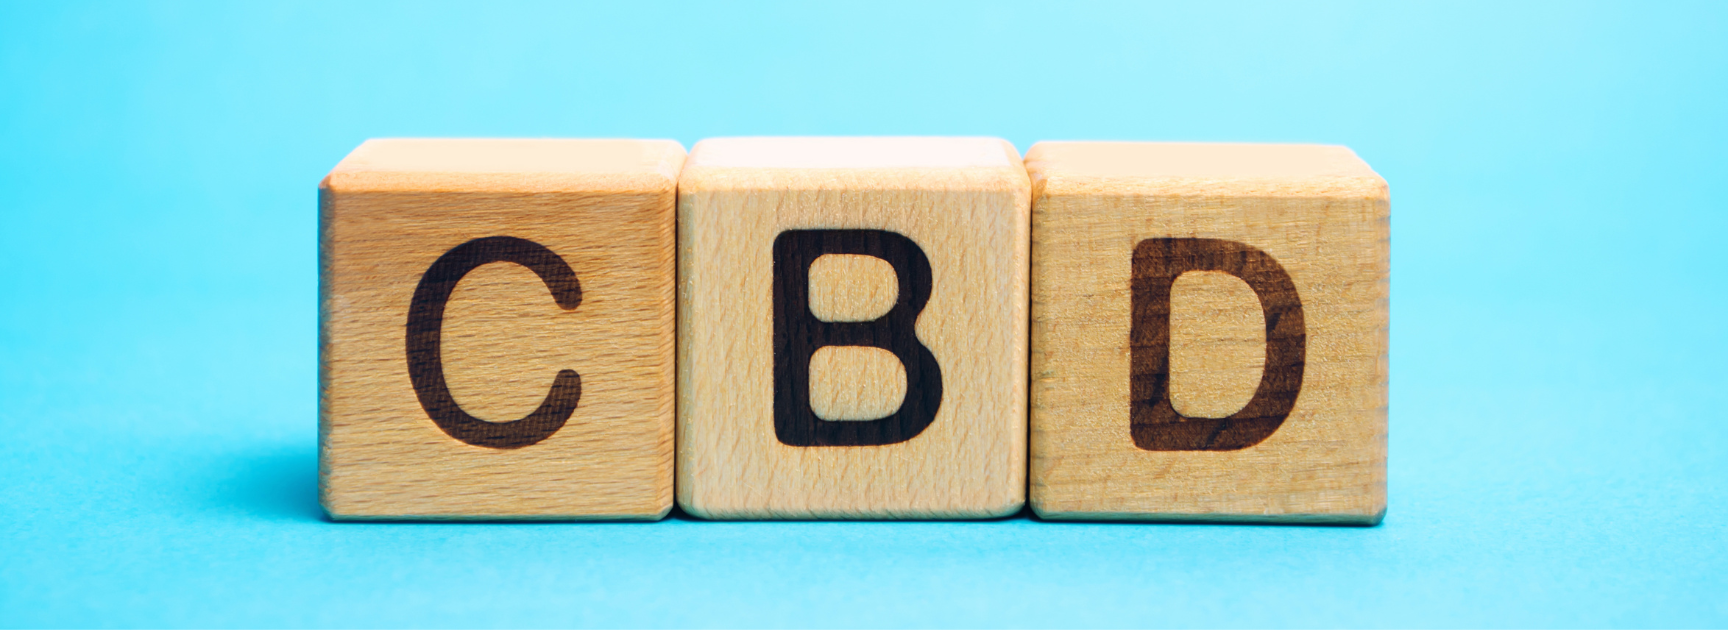 CBD cube letters